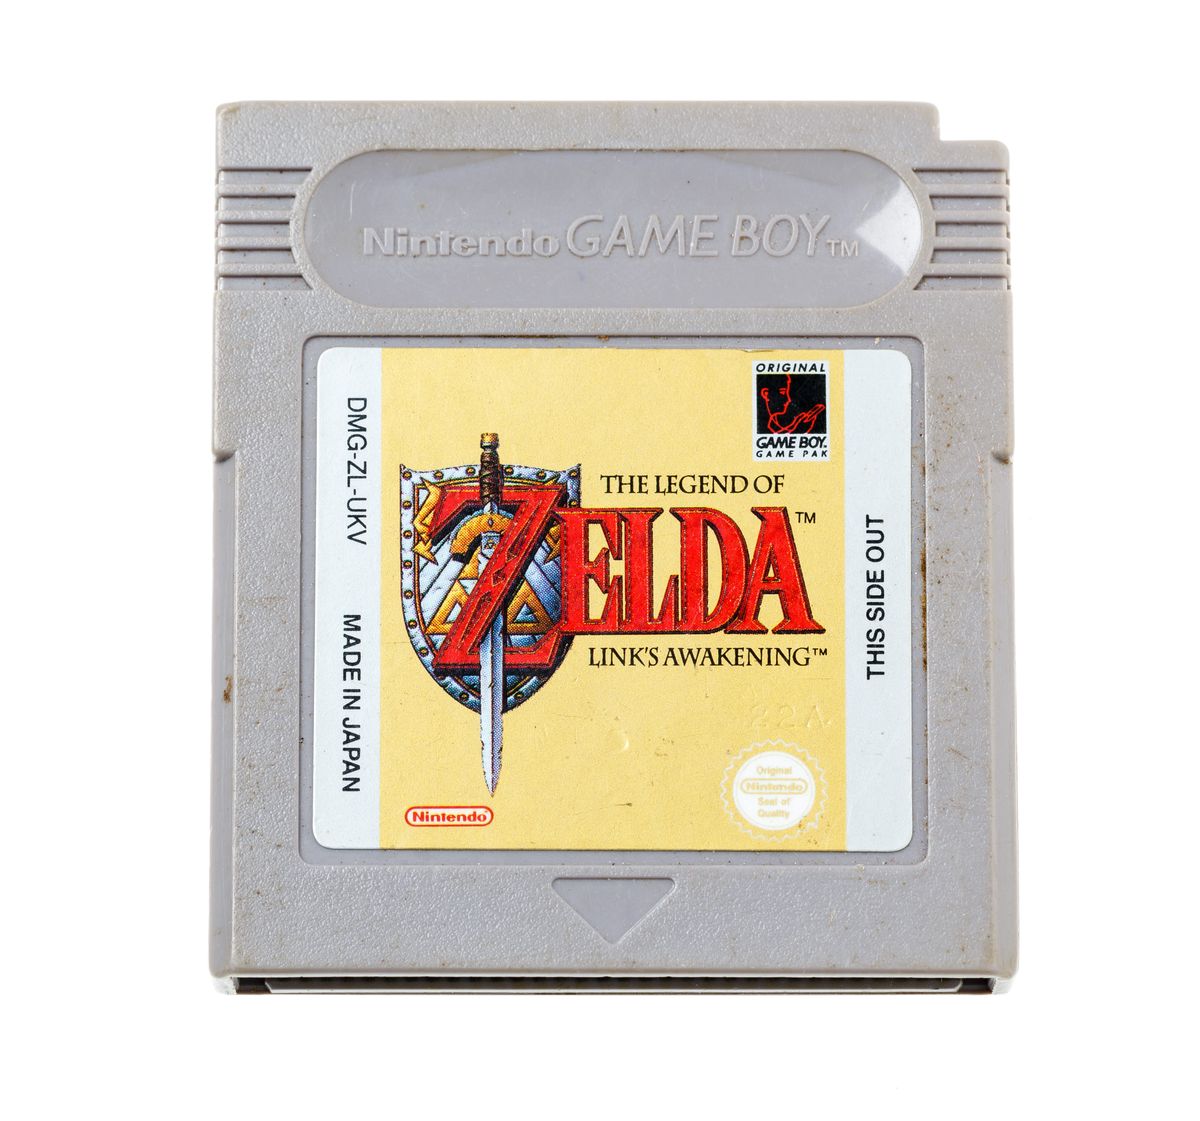 The Legend of Zelda Link's Awakening | Gameboy Classic Games | RetroNintendoKopen.nl